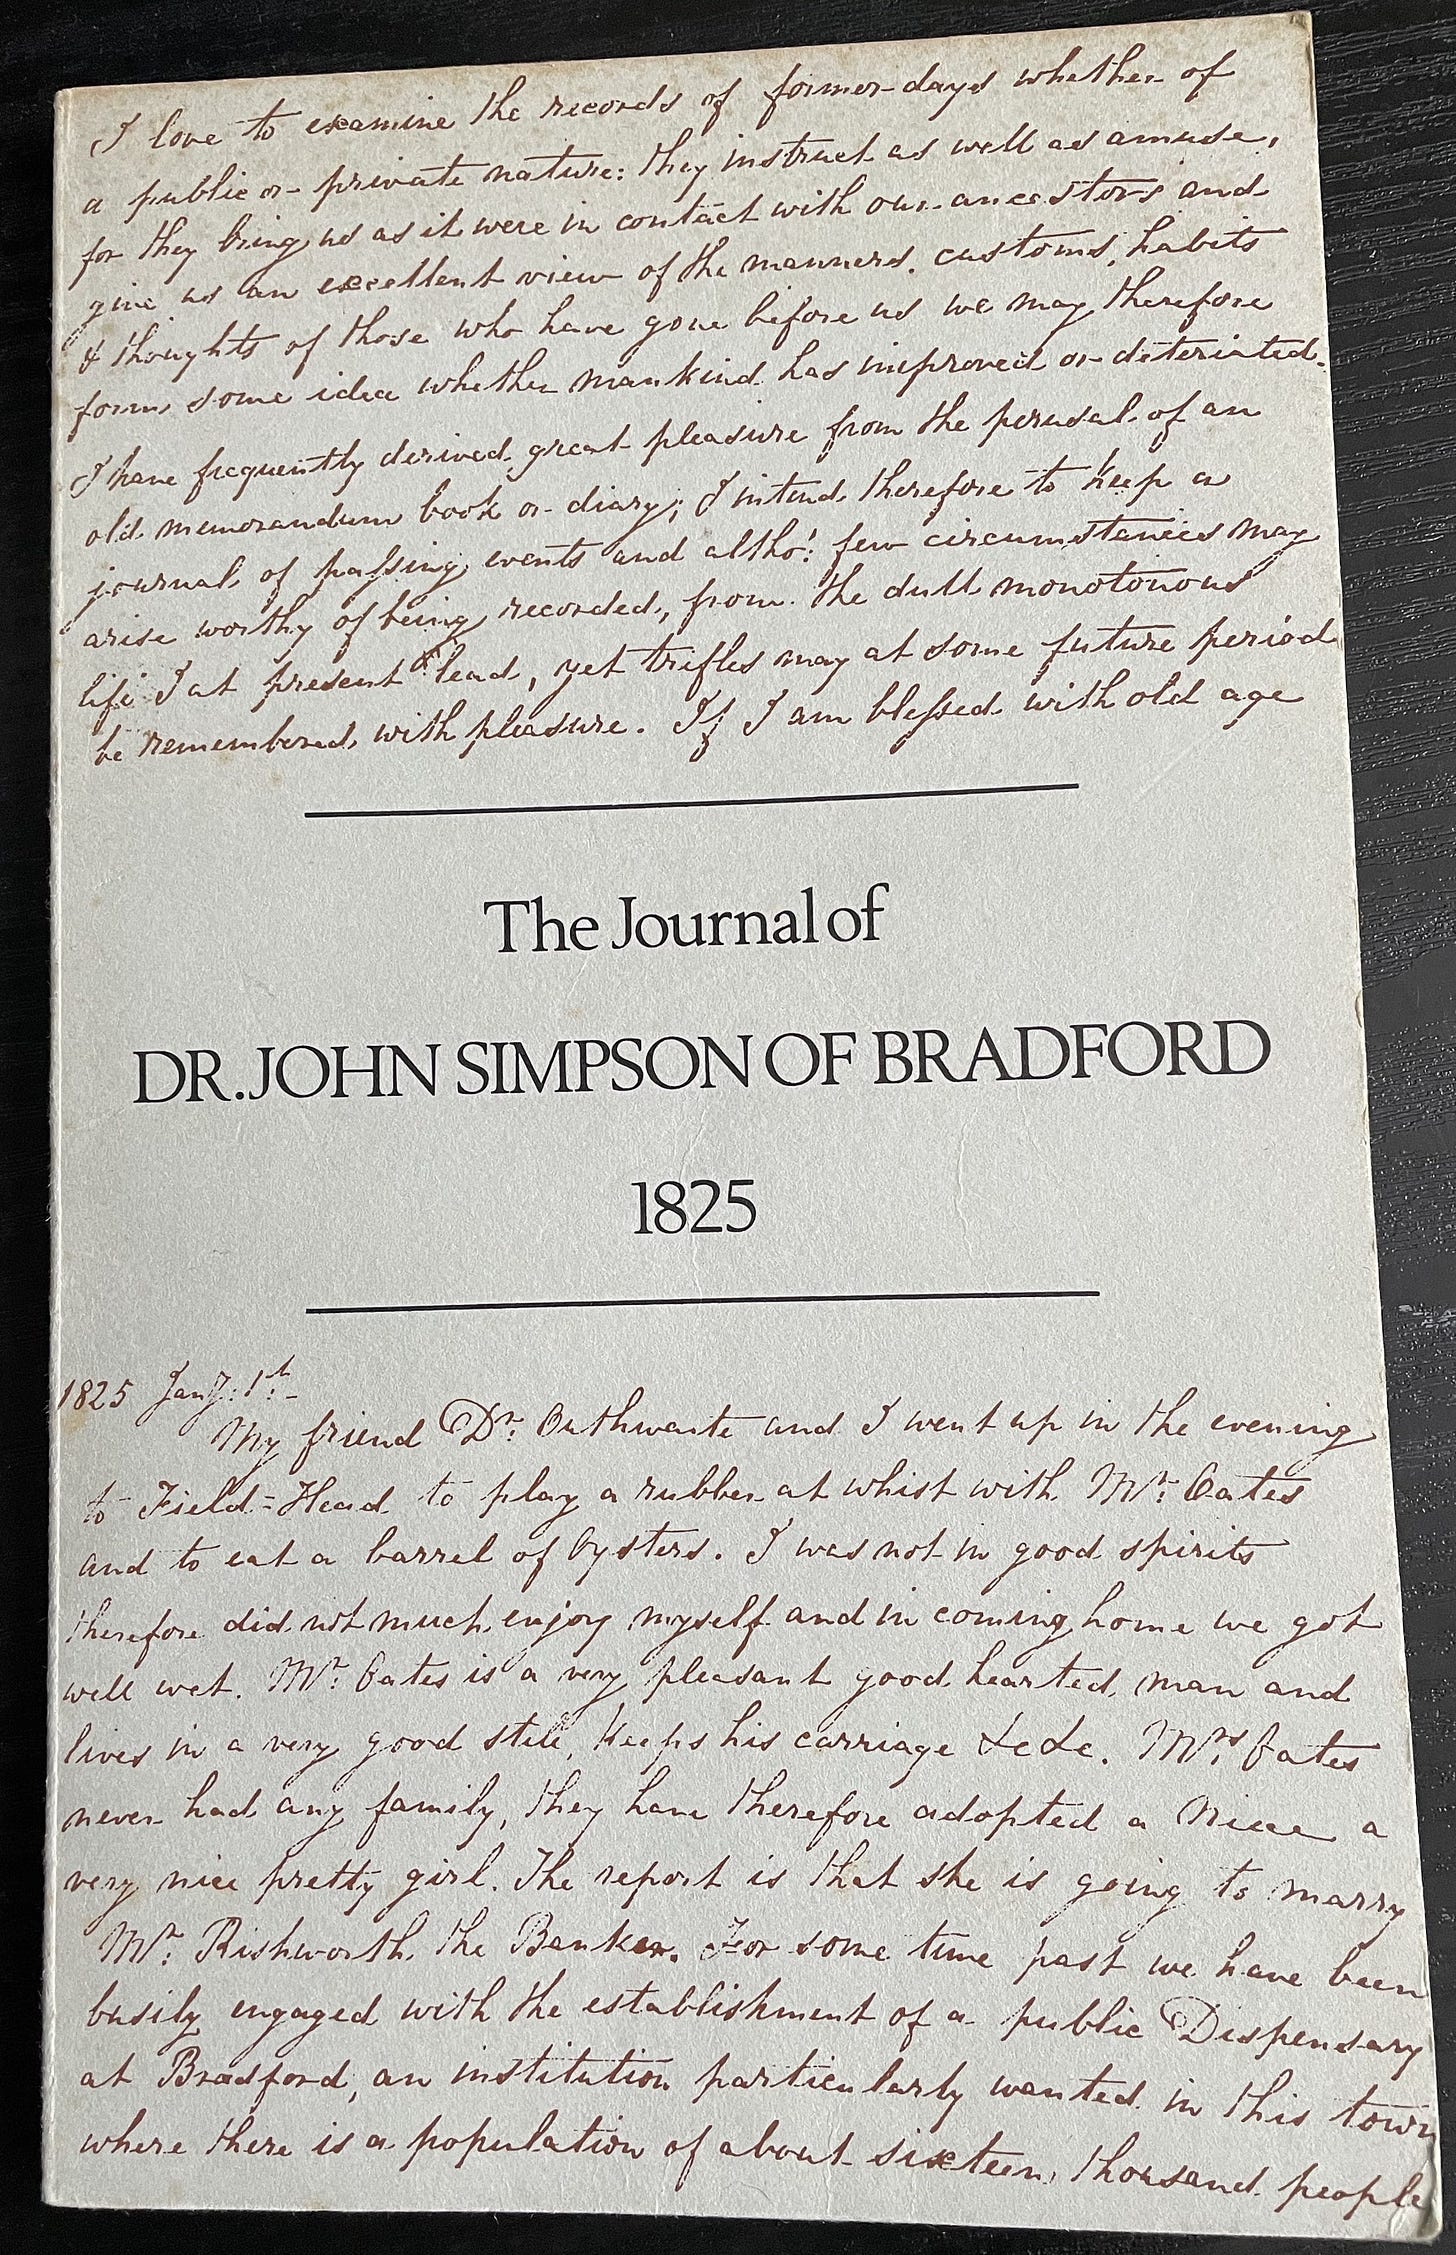 The Journal of Dr John Simpson of Bradford 1825